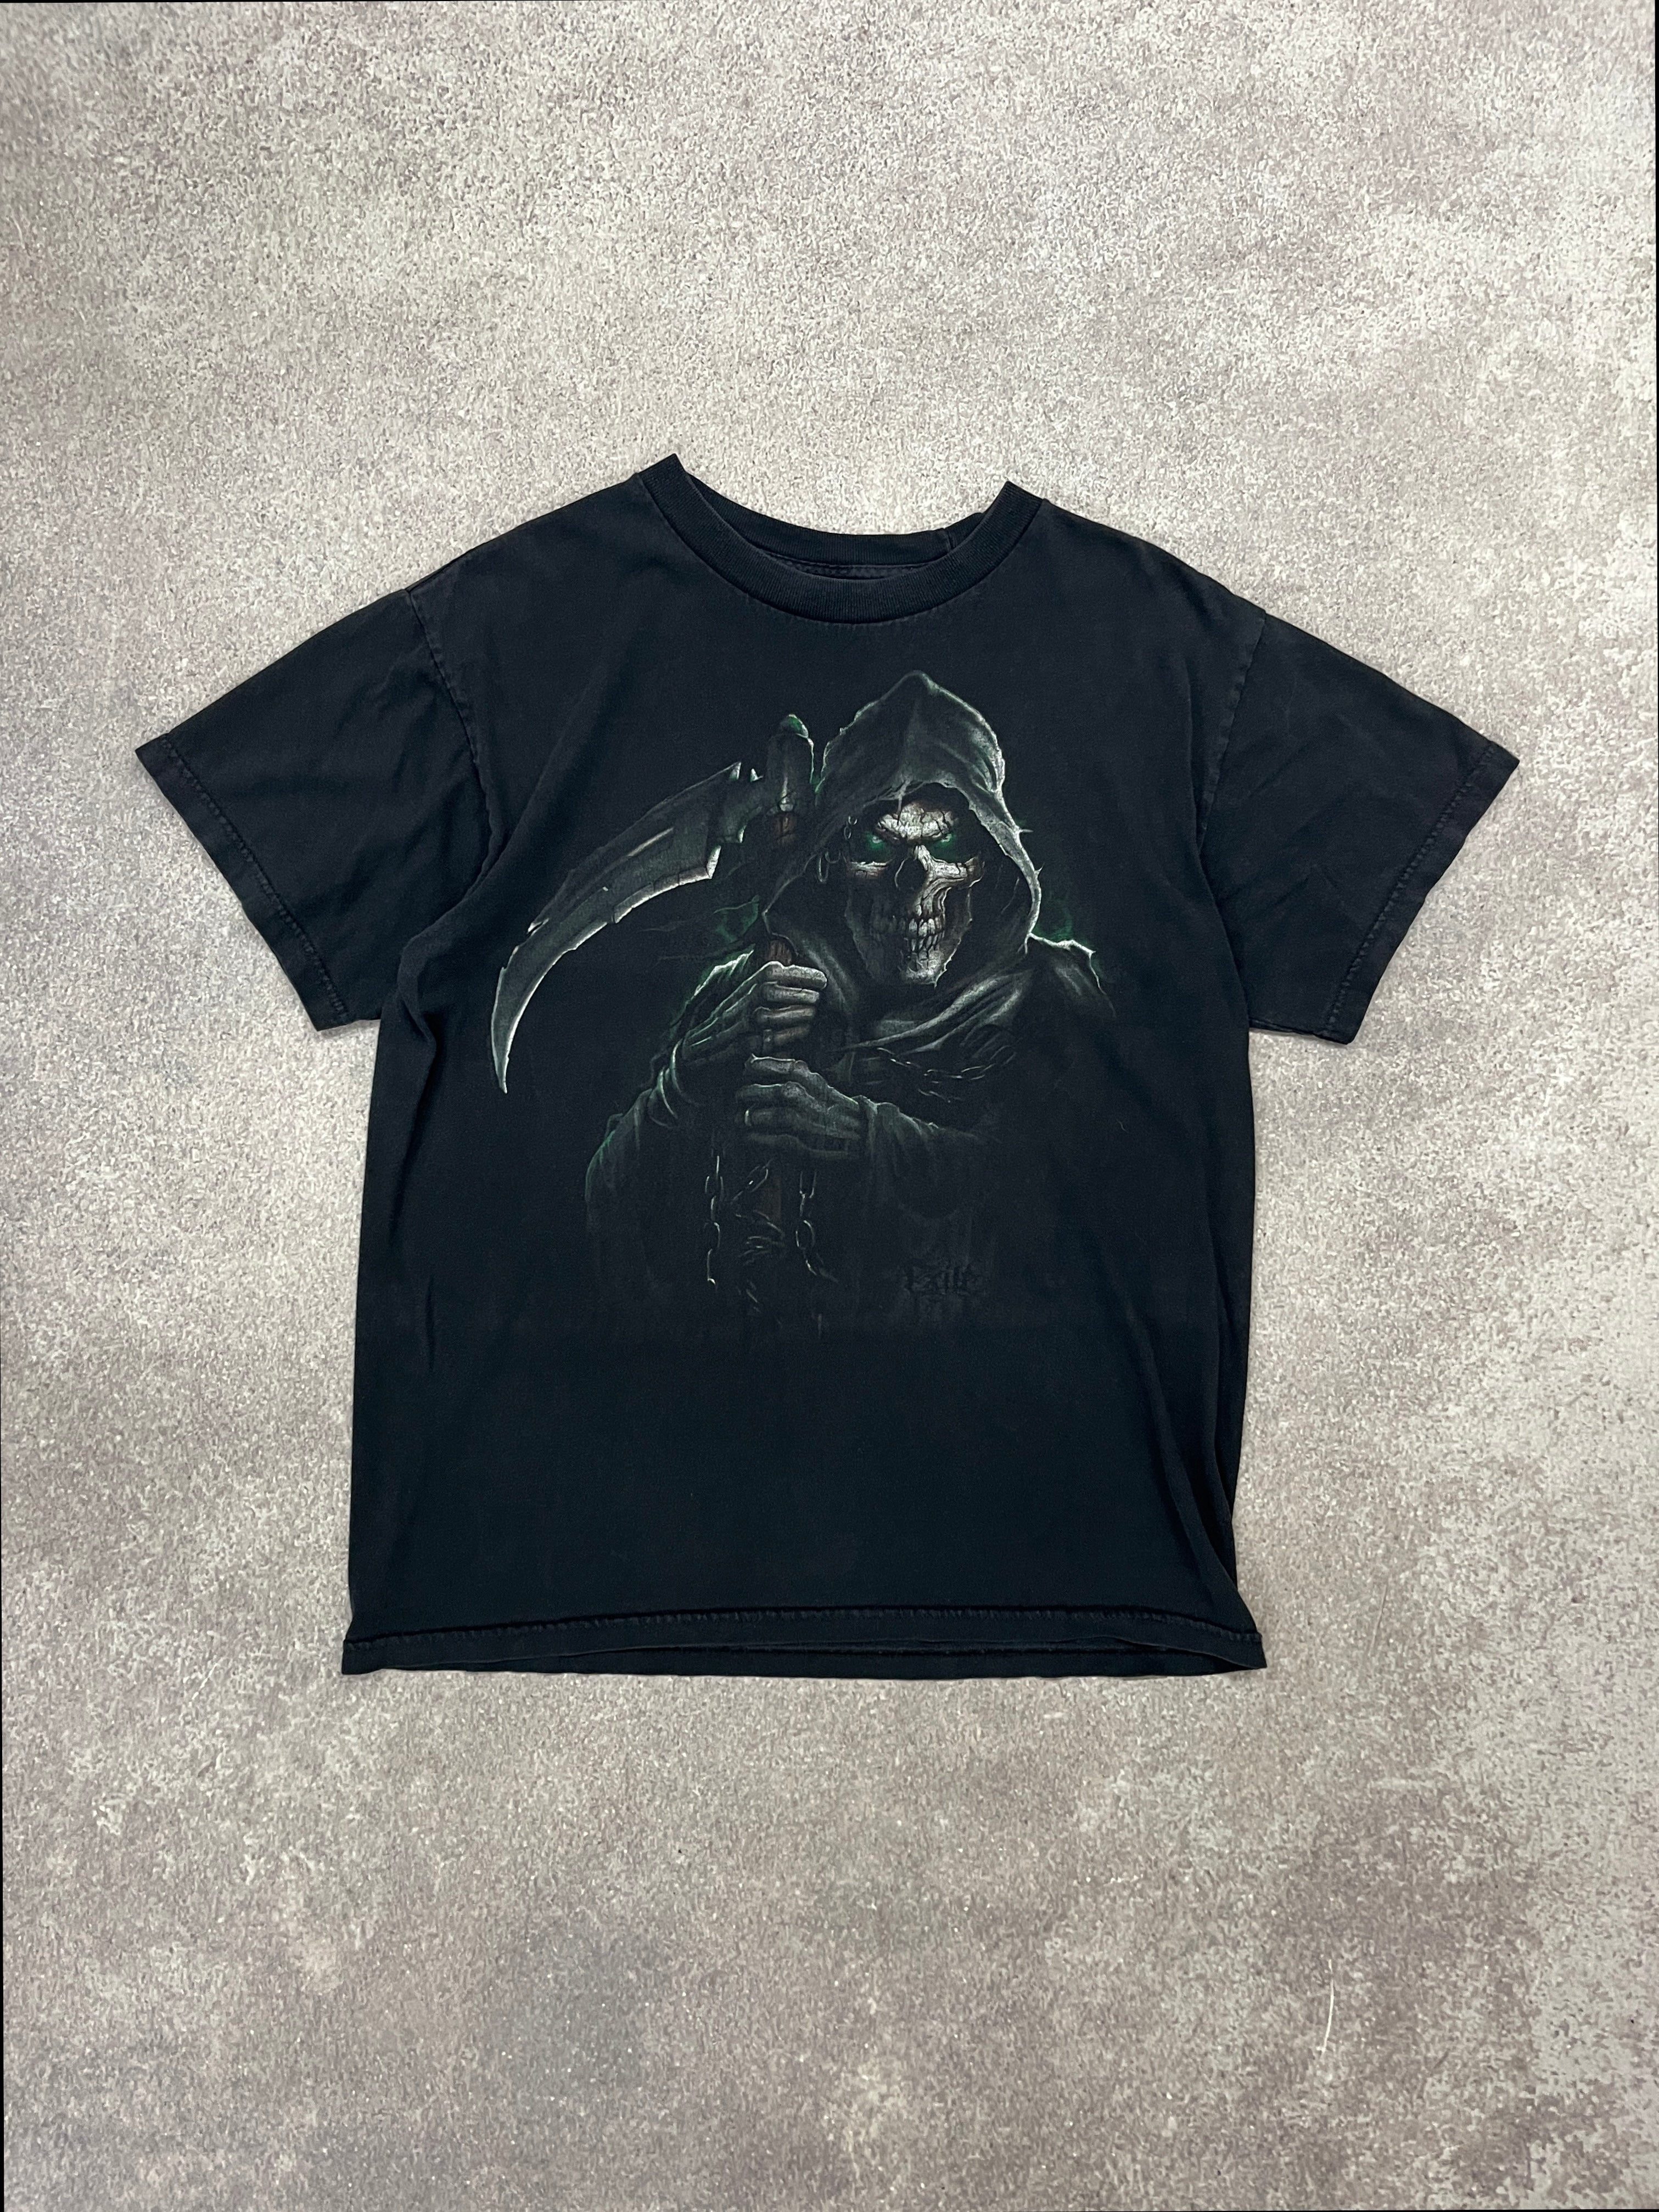 Vintage Grim Reaper TShirt Black // Medium - RHAGHOUSE VINTAGE